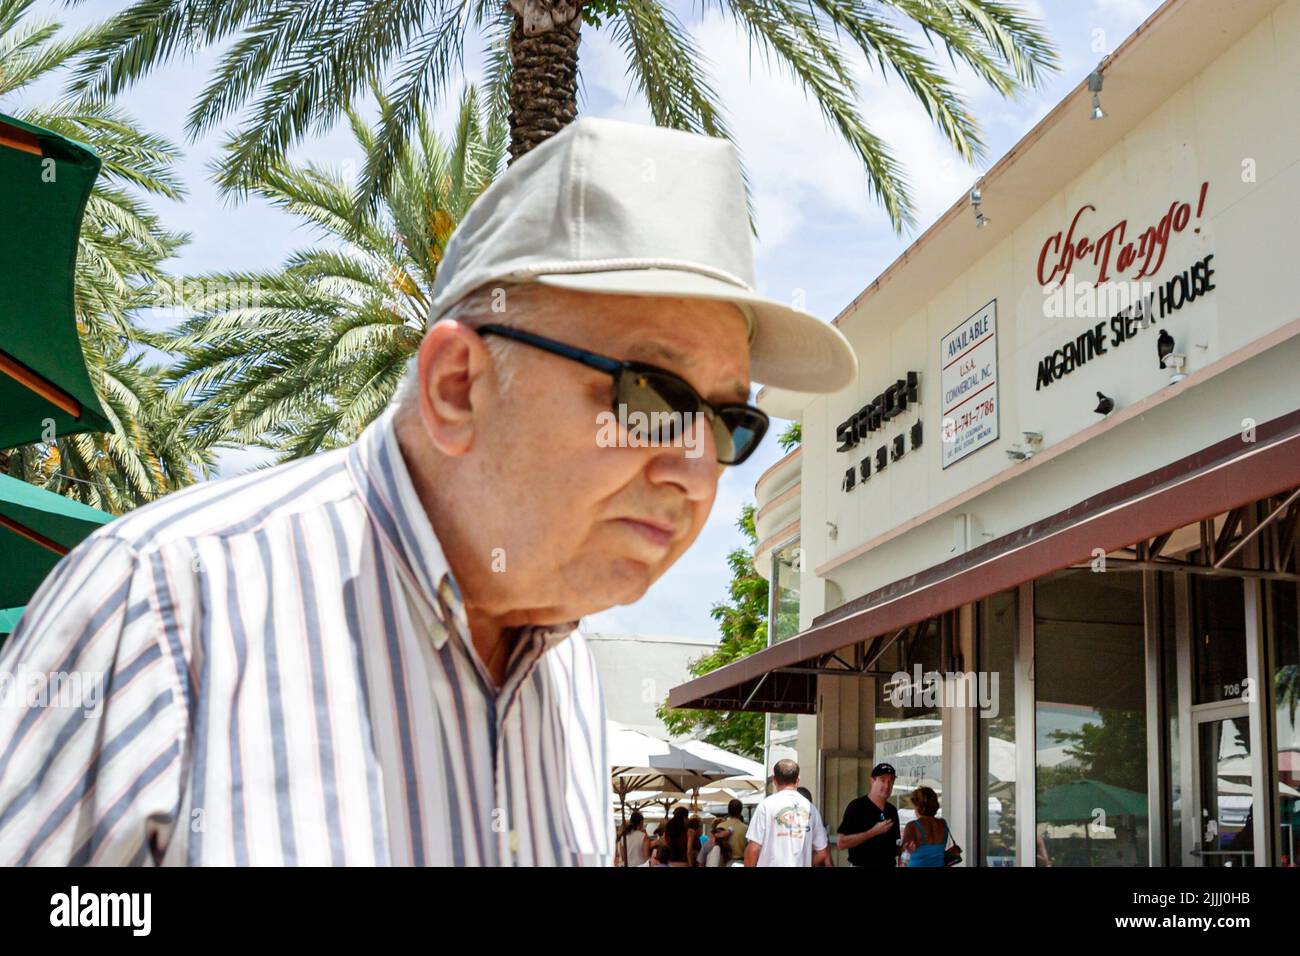 Miami Beach Florida, centro comercial peatonal Lincoln Road, anciano pensionista ner jubilado anciano que llevaba gafas de sol sobre postura doblada Foto de stock